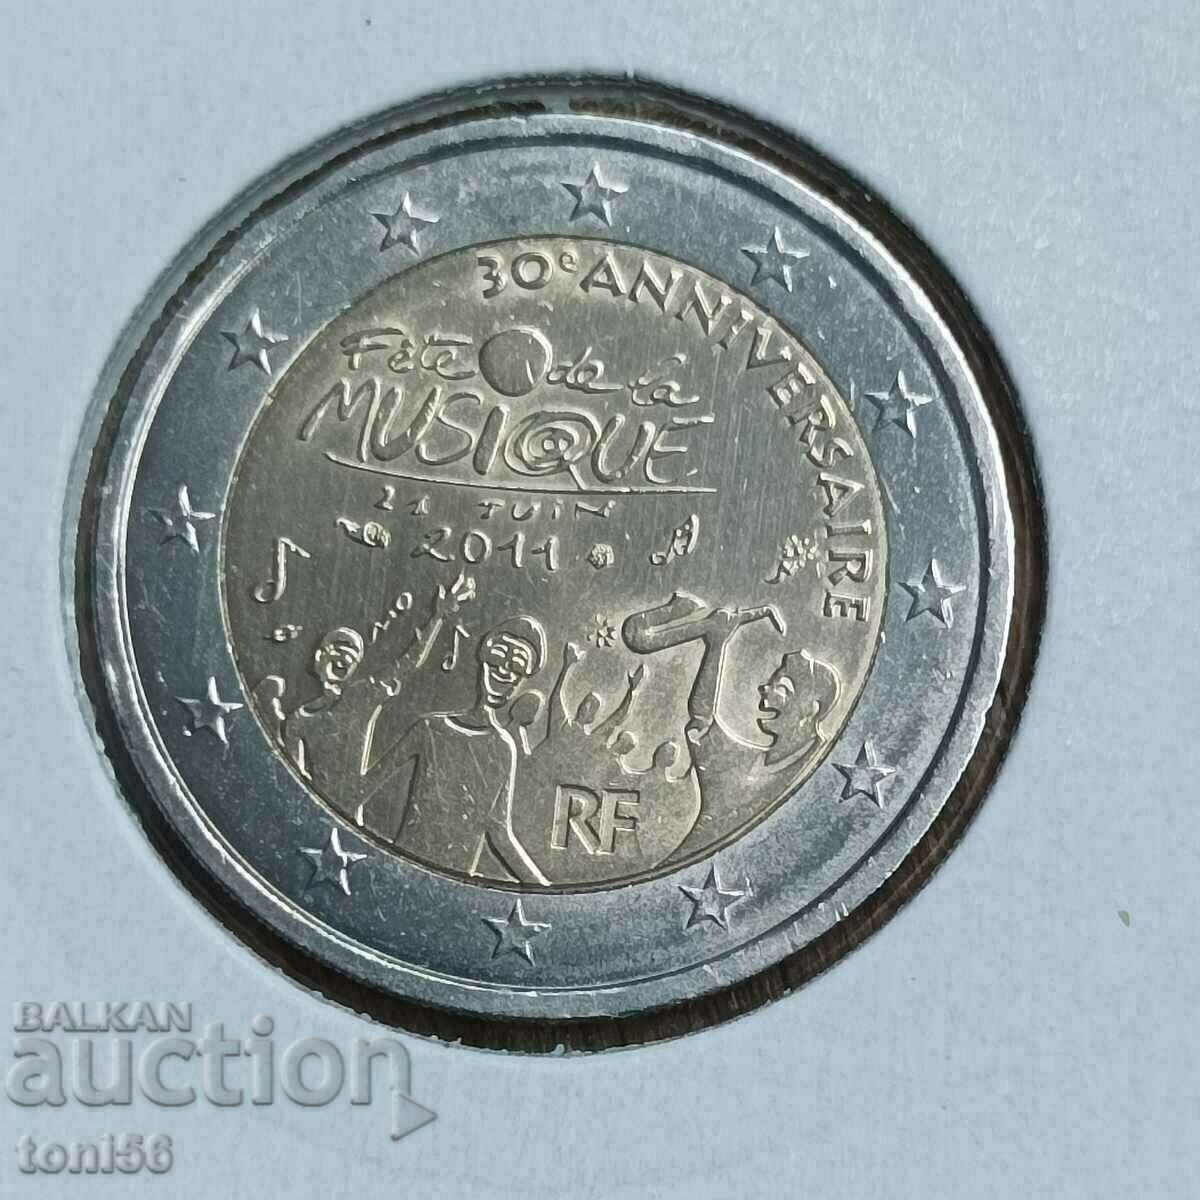 Γερμανία 5 γραμματόσημα 1985 F, UNC, απόδειξη